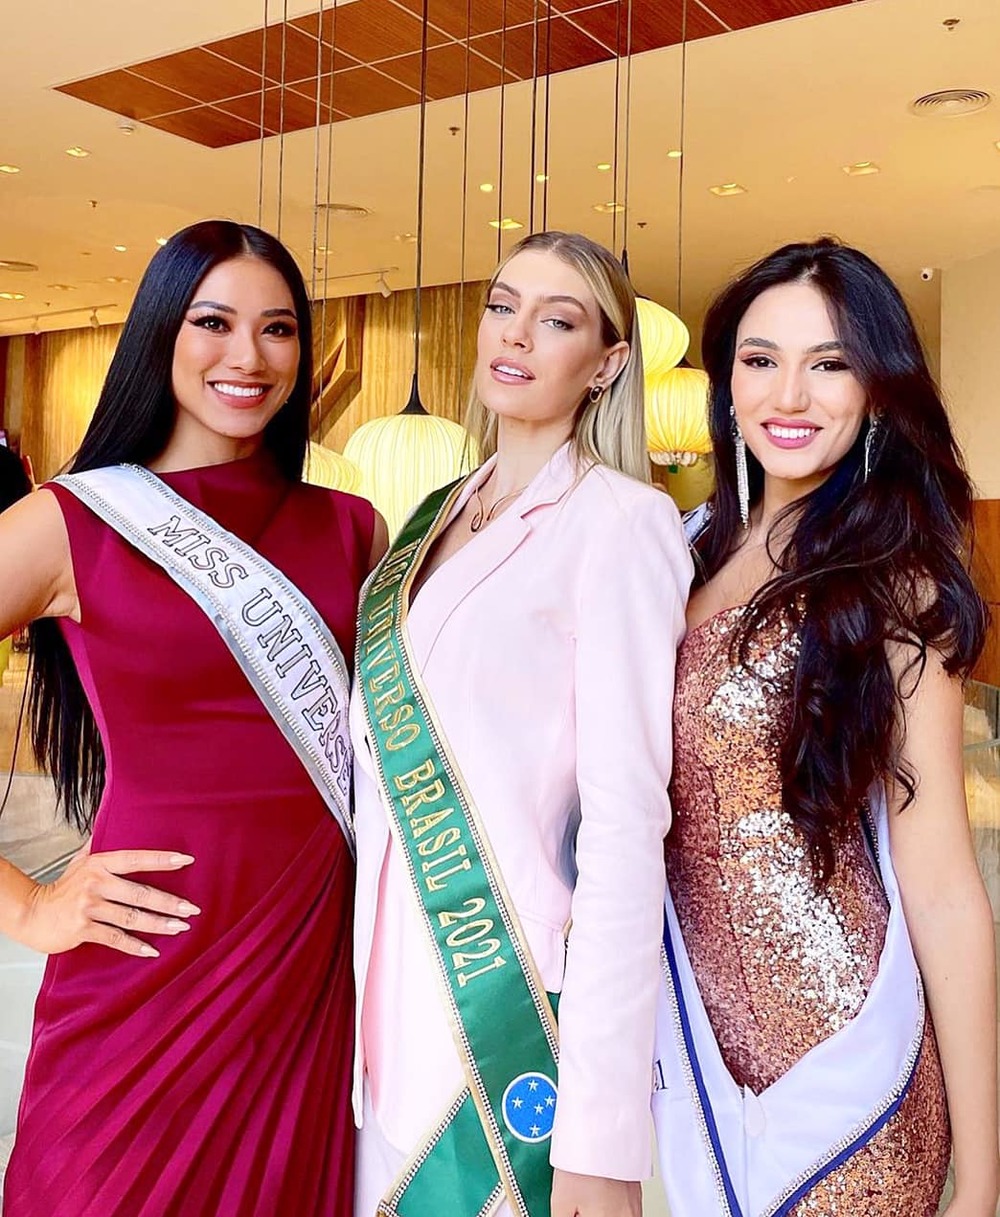  
Kim Duyên rất tự tin, tỏa sáng trong những ngày hoạt động đầu tiên trong khuôn khổ Miss Universe 2021. (Ảnh: FBNV) - Tin sao Viet - Tin tuc sao Viet - Scandal sao Viet - Tin tuc cua Sao - Tin cua Sao